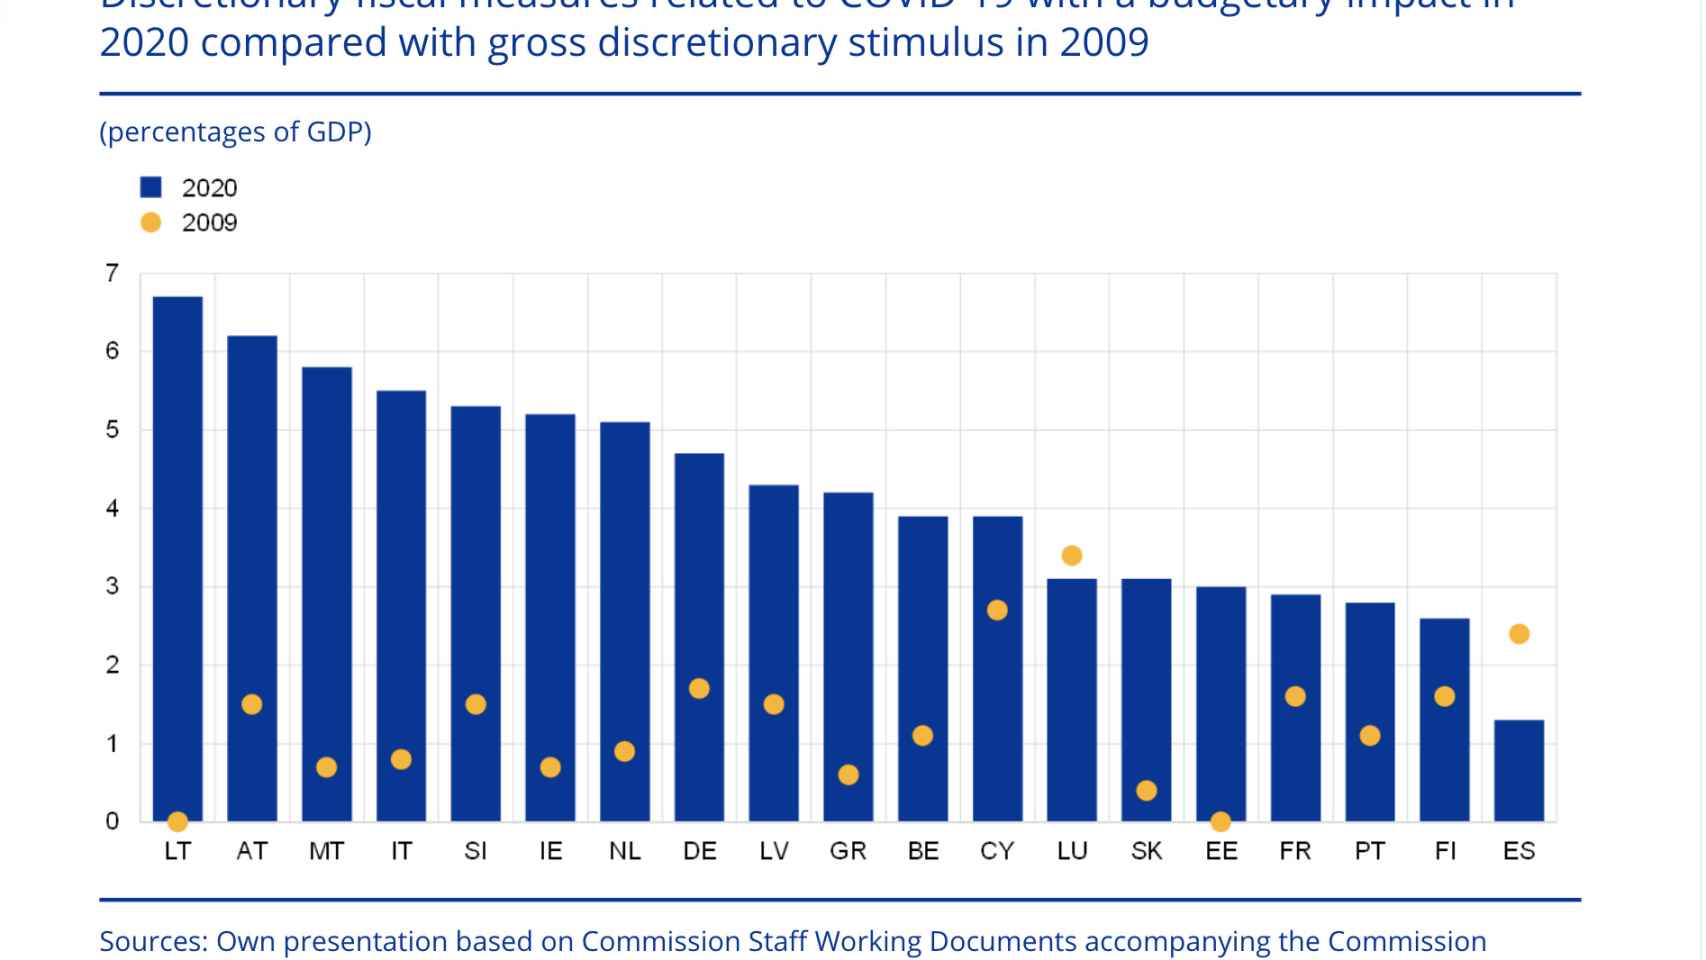 Medidas fiscales discrecionales relacionadas con la Covid-19 con impacto presupuestario en 2020 (en % del PIB). Fuente: BCE